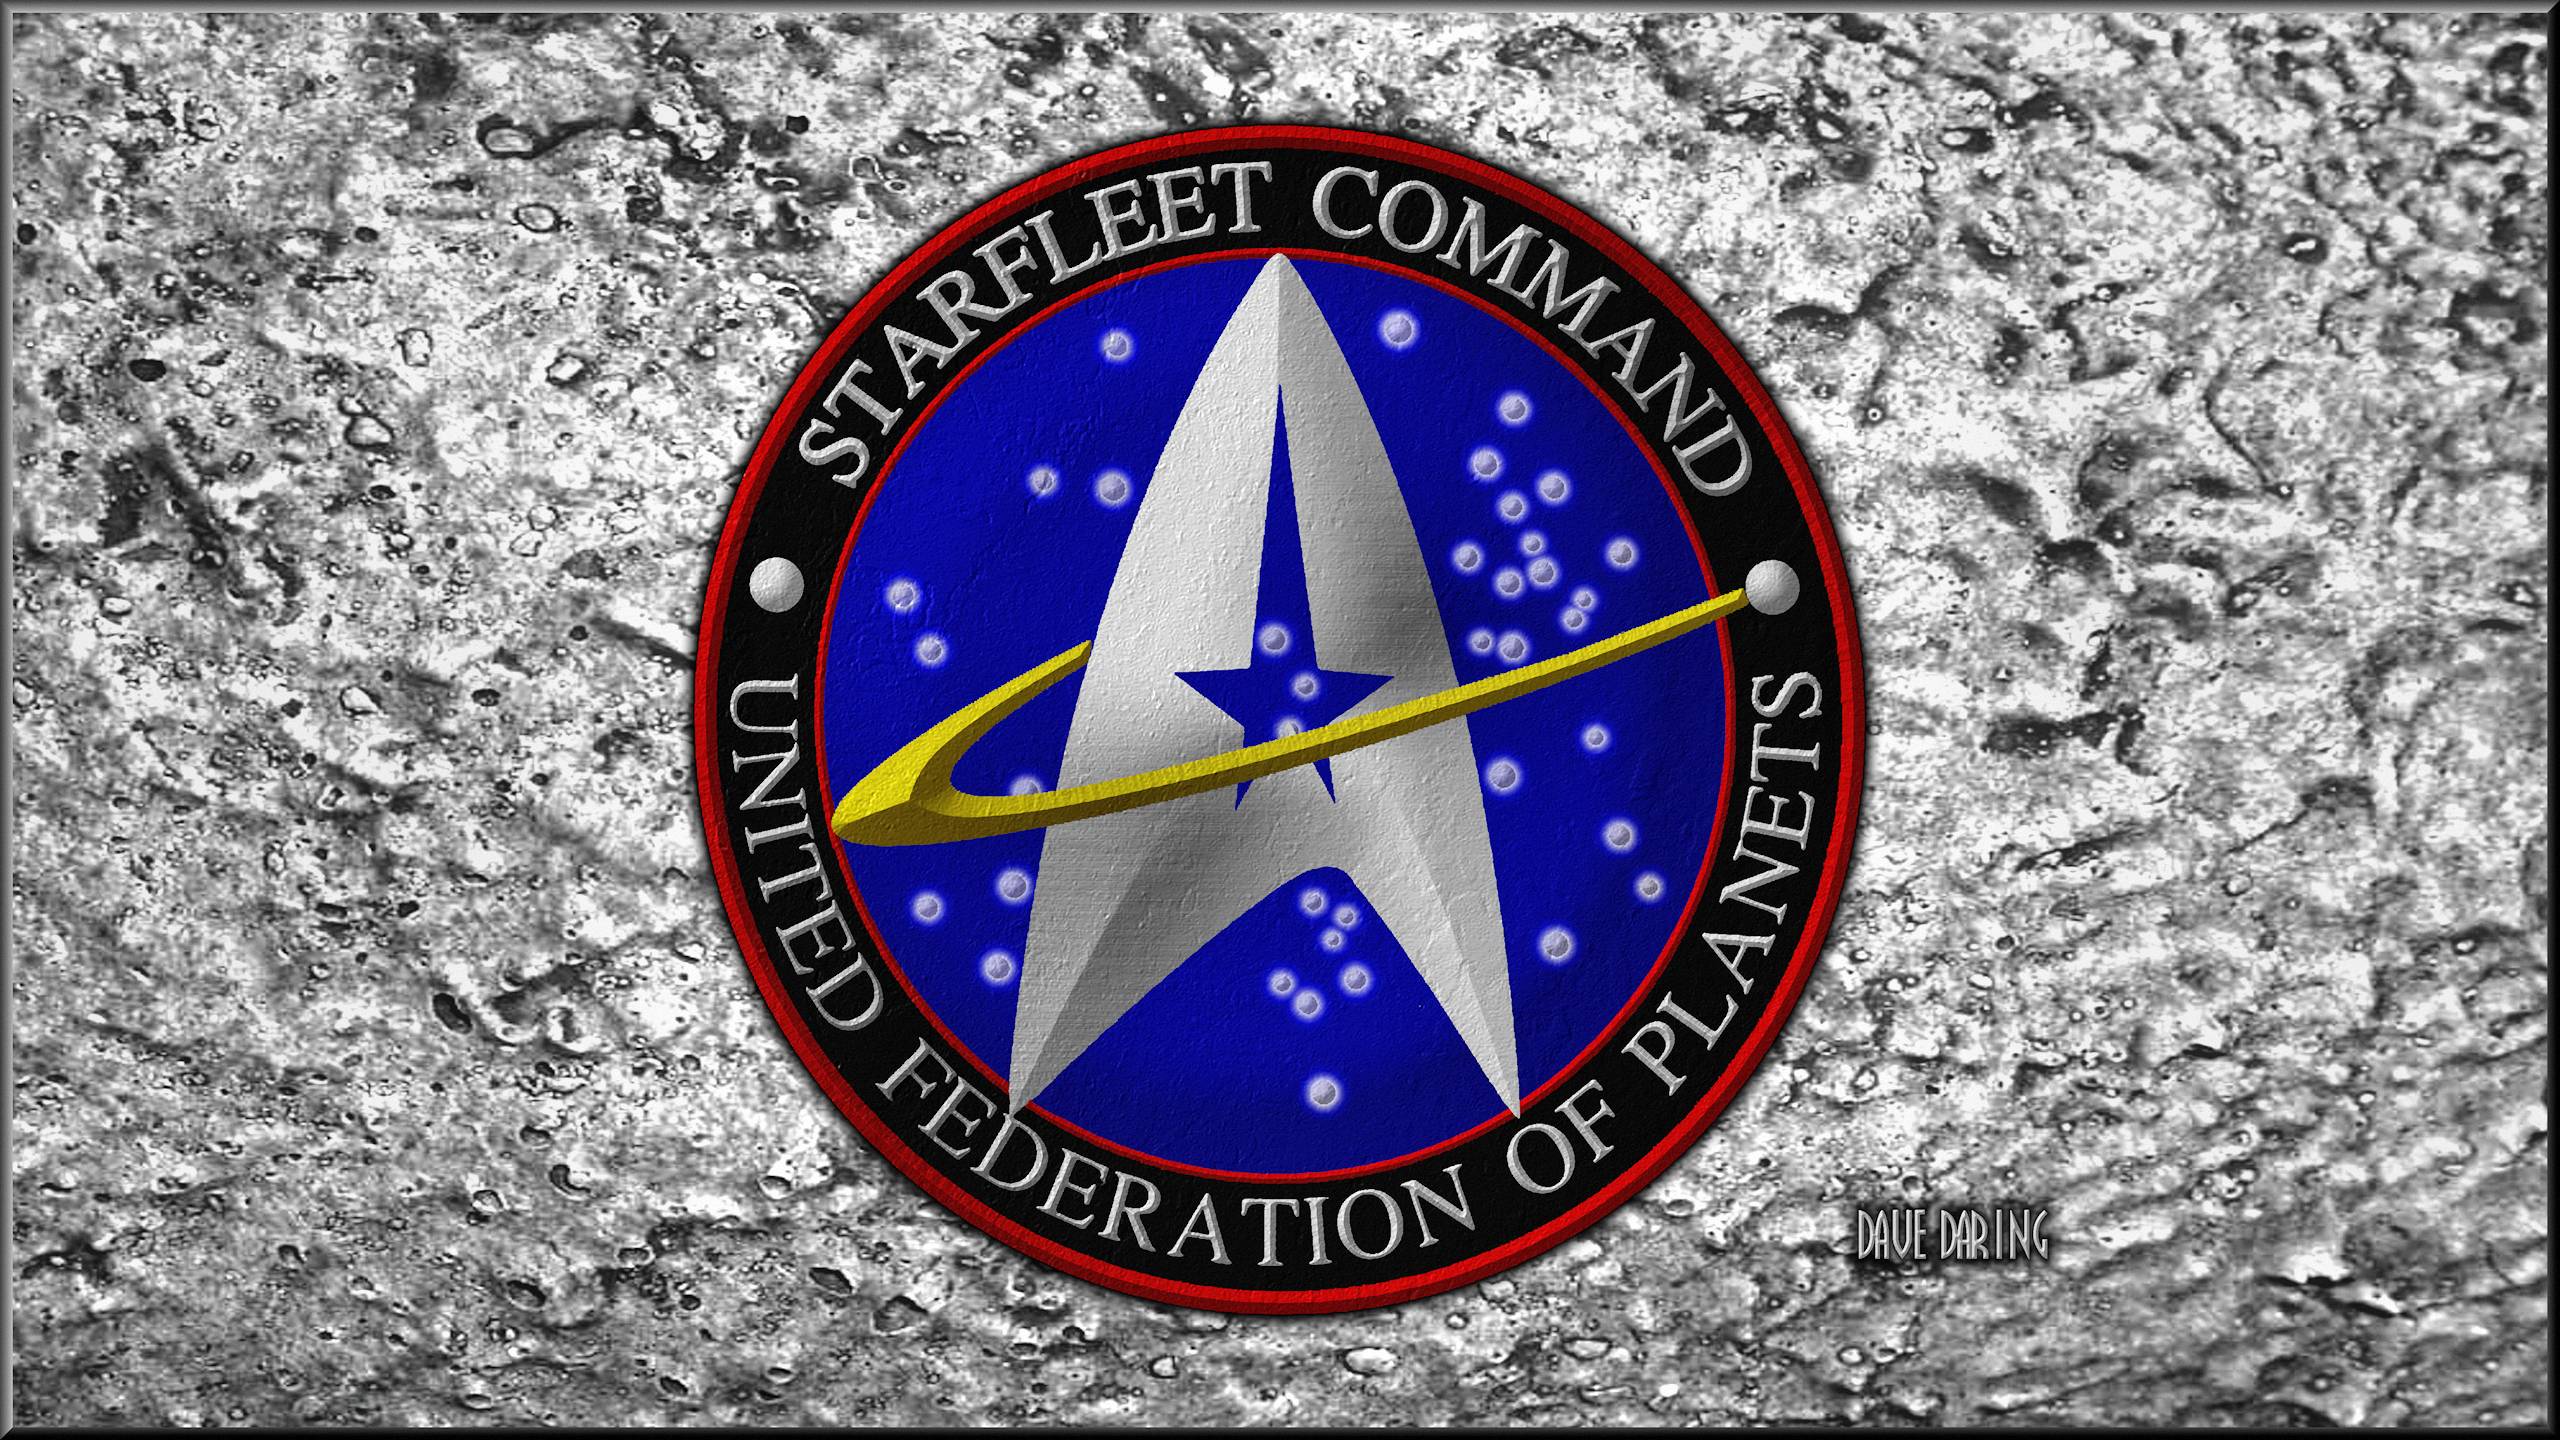 Star Trek Star Fleet Command Crest By Dave Daring